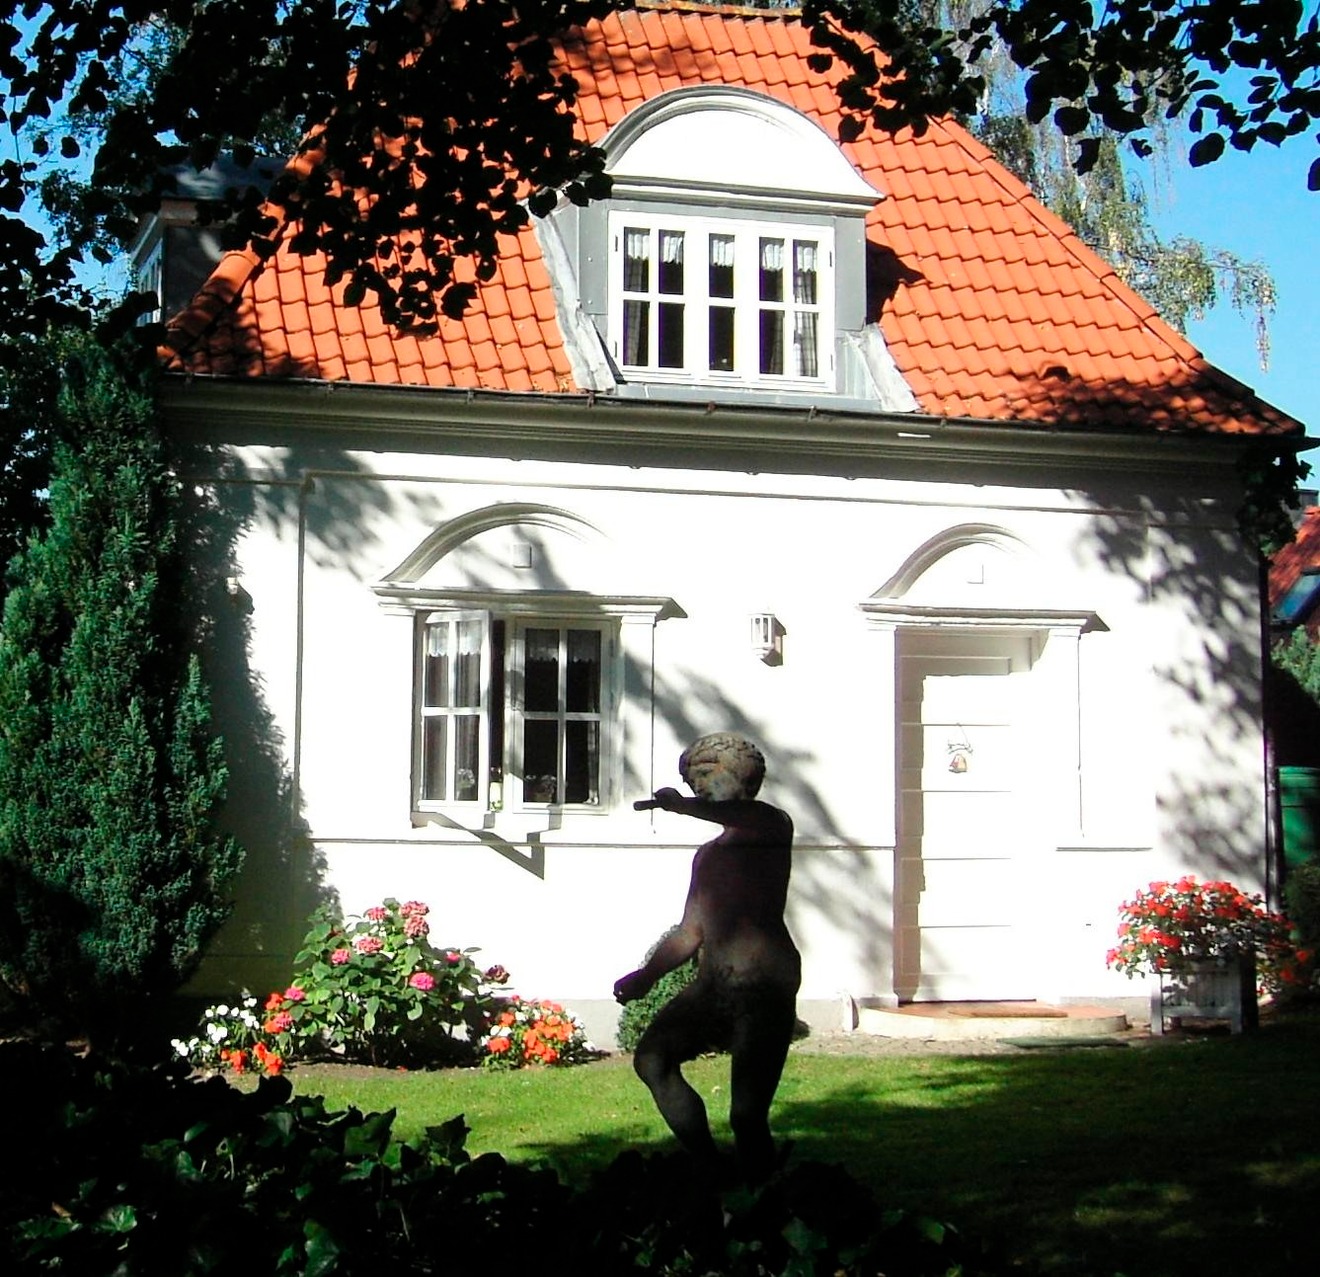 Simon Ferienhaus in Deutschland